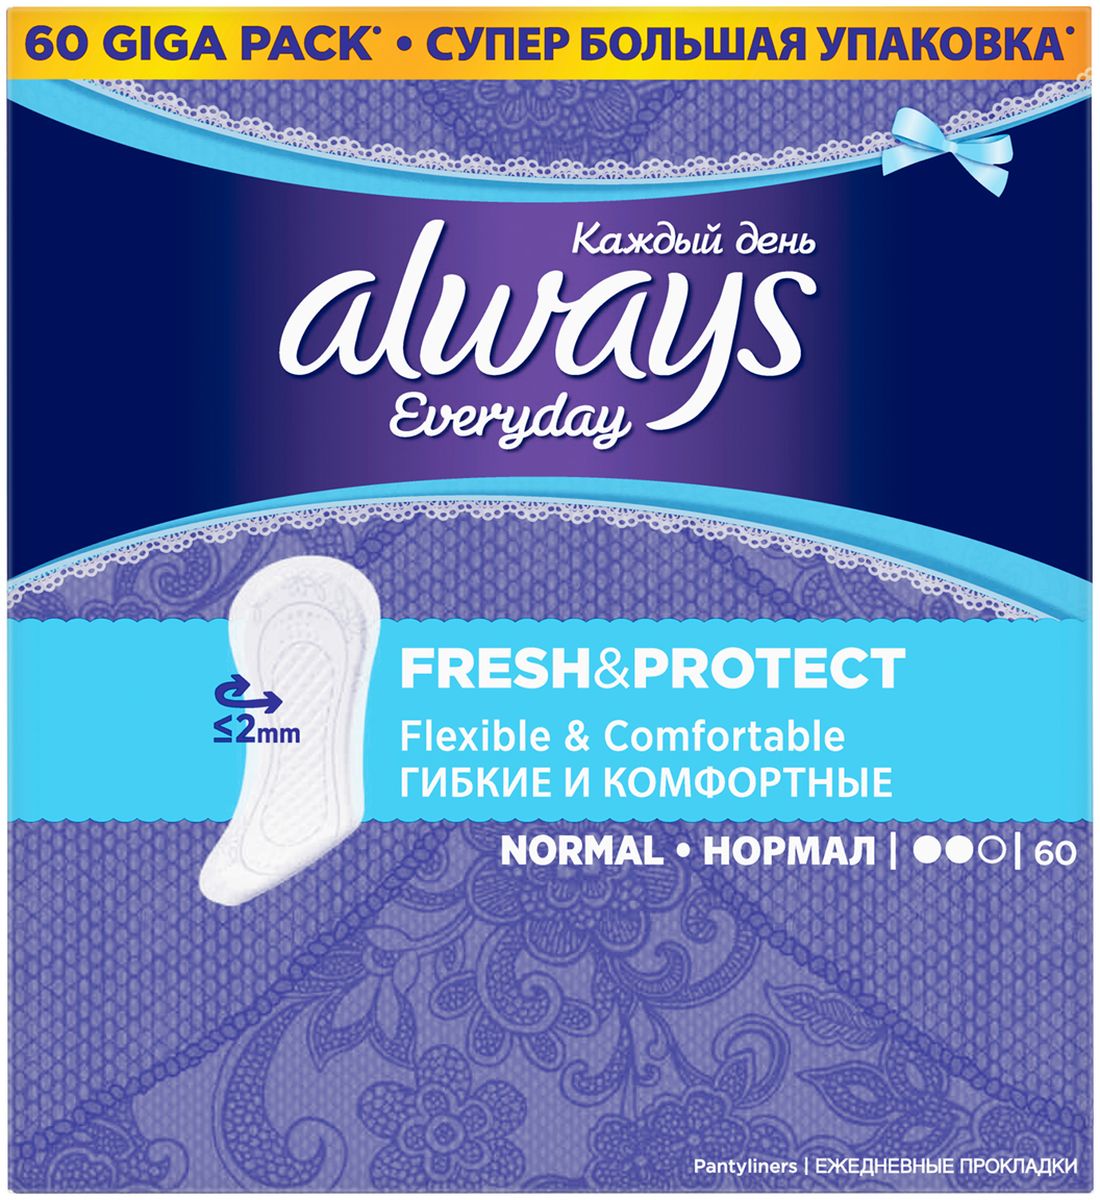 Always Ежедневные гигиенические прокладки Каждый день нормал Clean & Protect, 60 шт